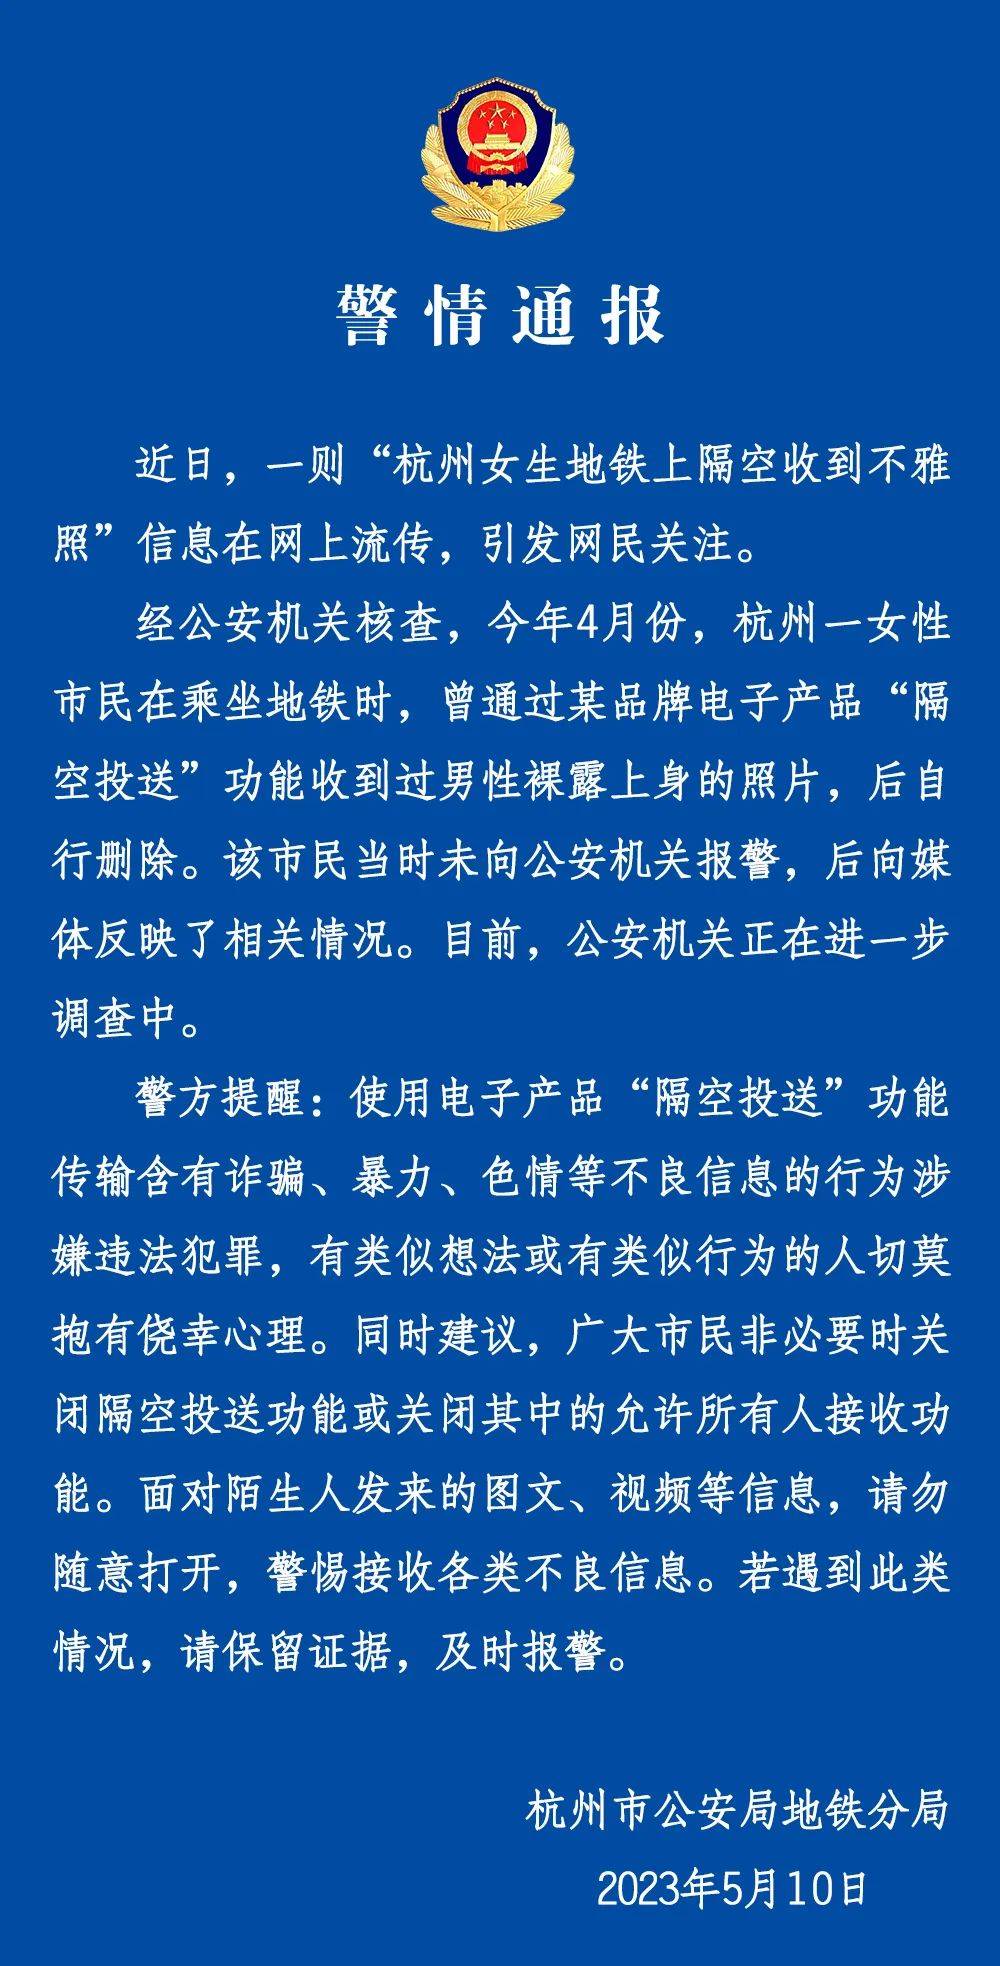 手机联系人:“地铁上隔空收到不雅照”，杭州警方通报！iPhone客服回应